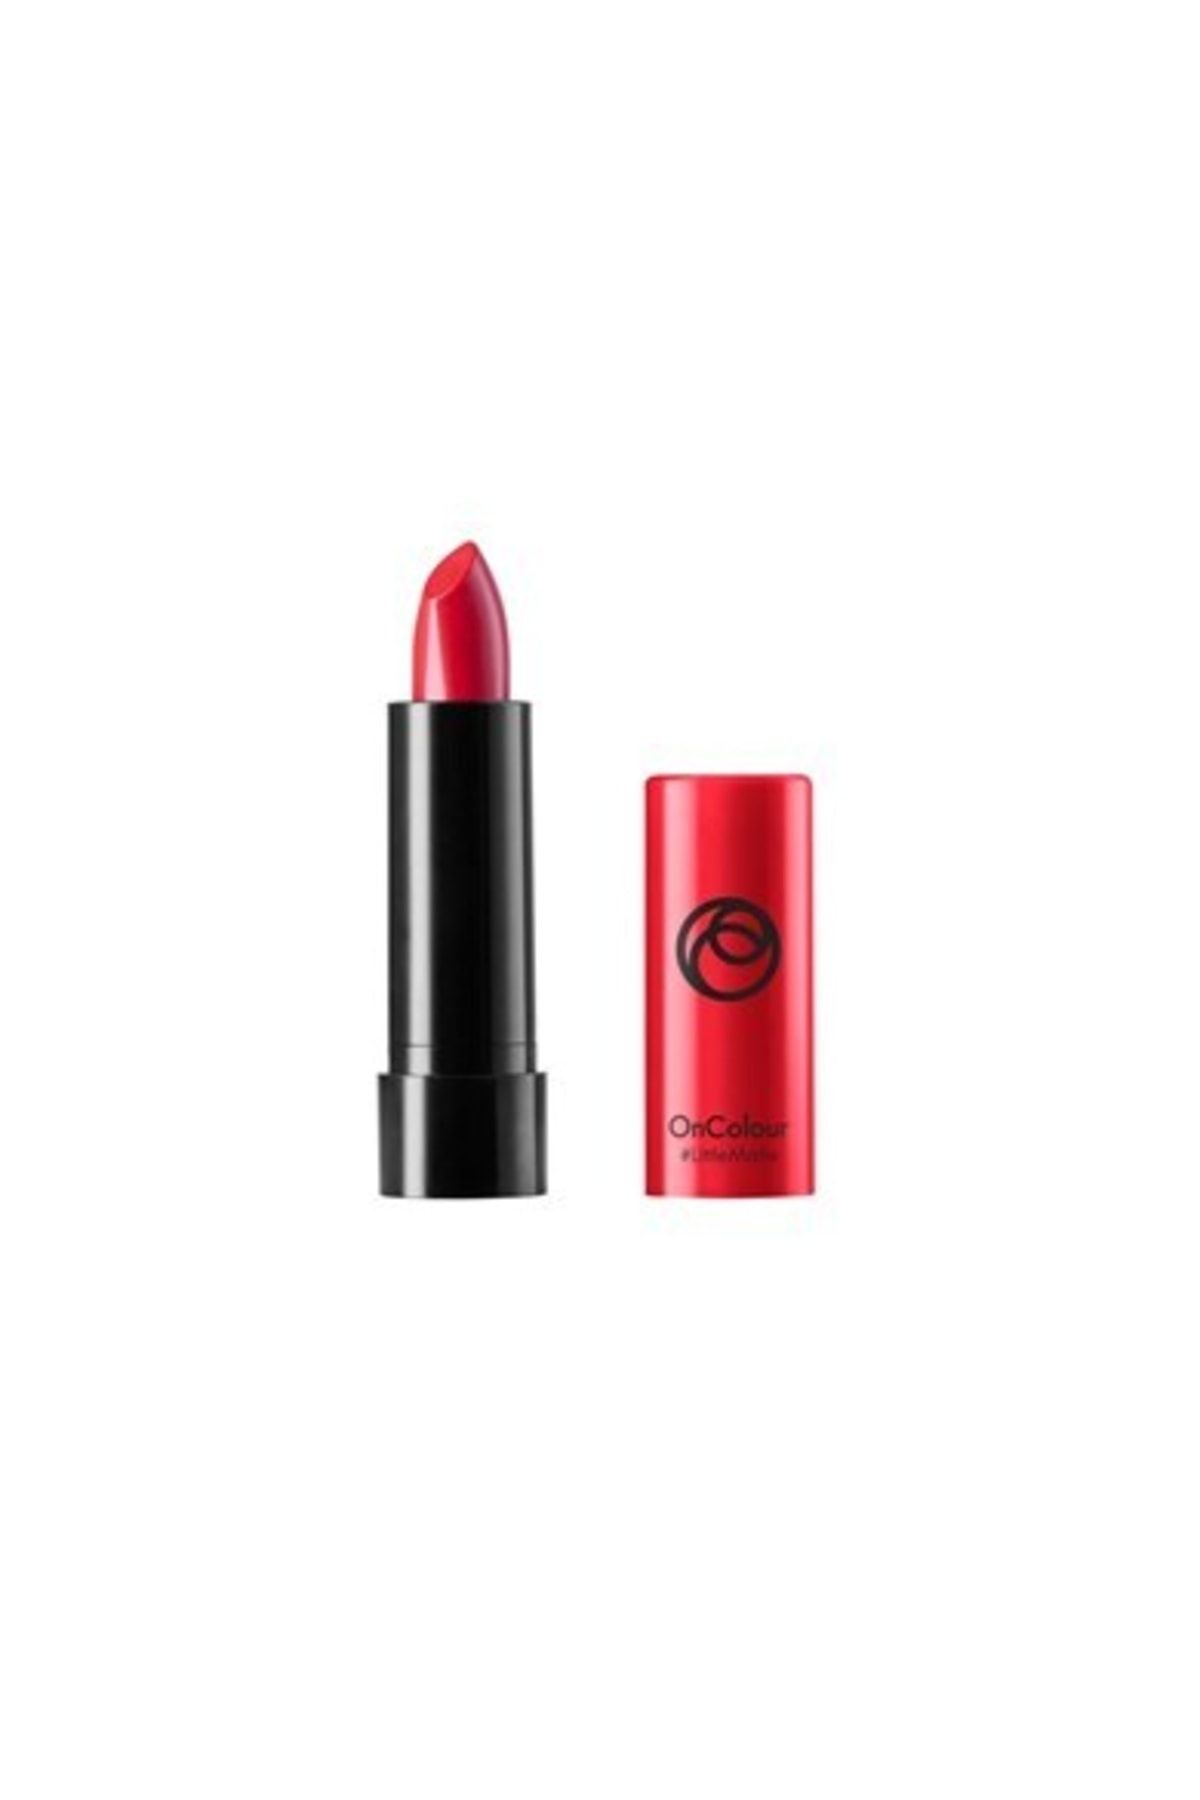 Oriflame Lipstick Ruj Haute Red